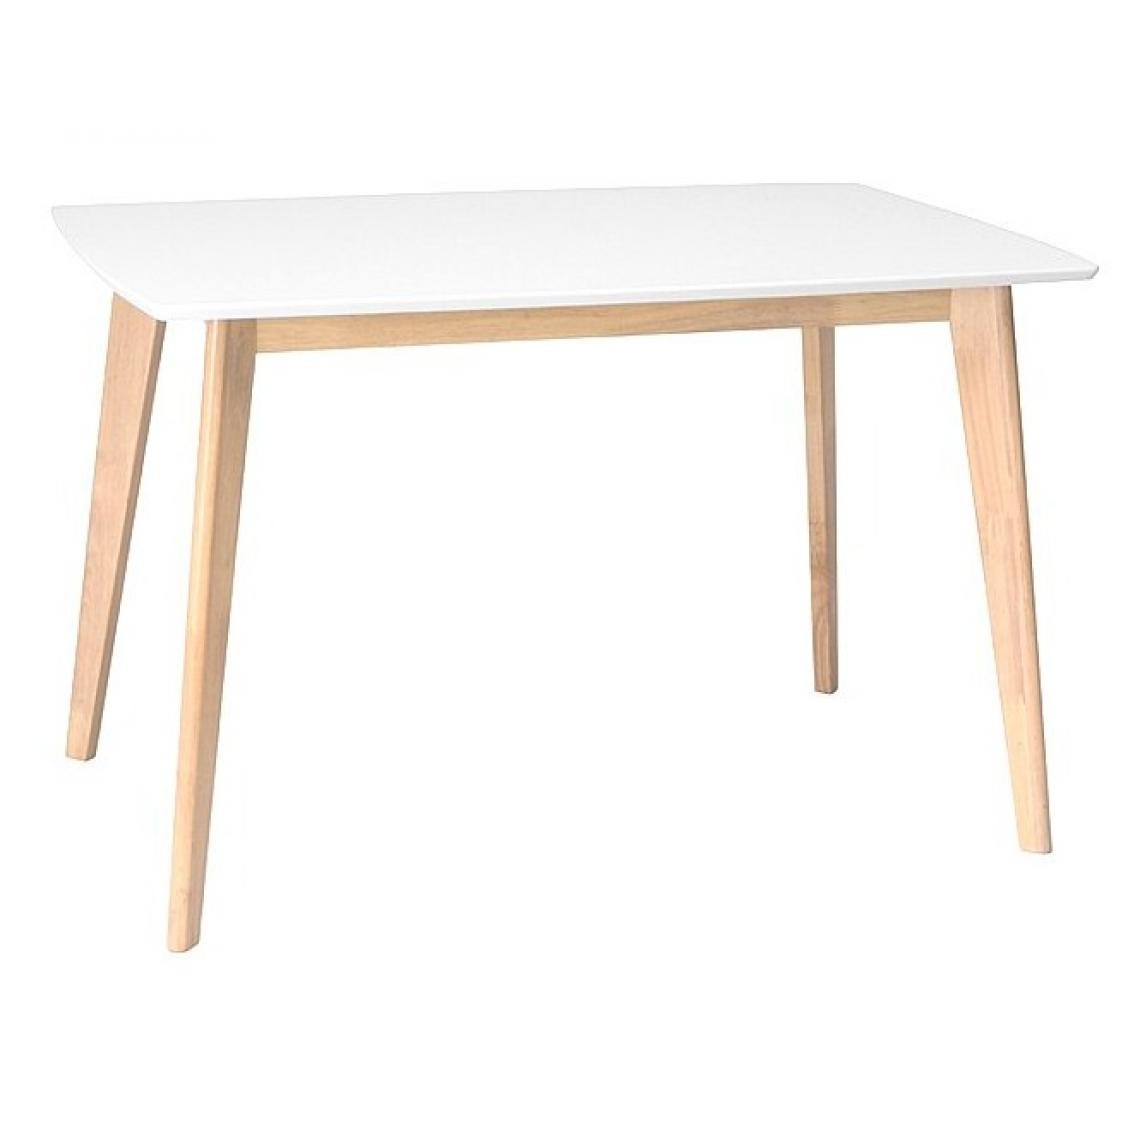 Hucoco - KOMBE - Table de cuisine salle à manger style scandinave - 120x75x75 cm - Plateau MDF + Pieds en bois - Table moderne - Blanc - Tables à manger